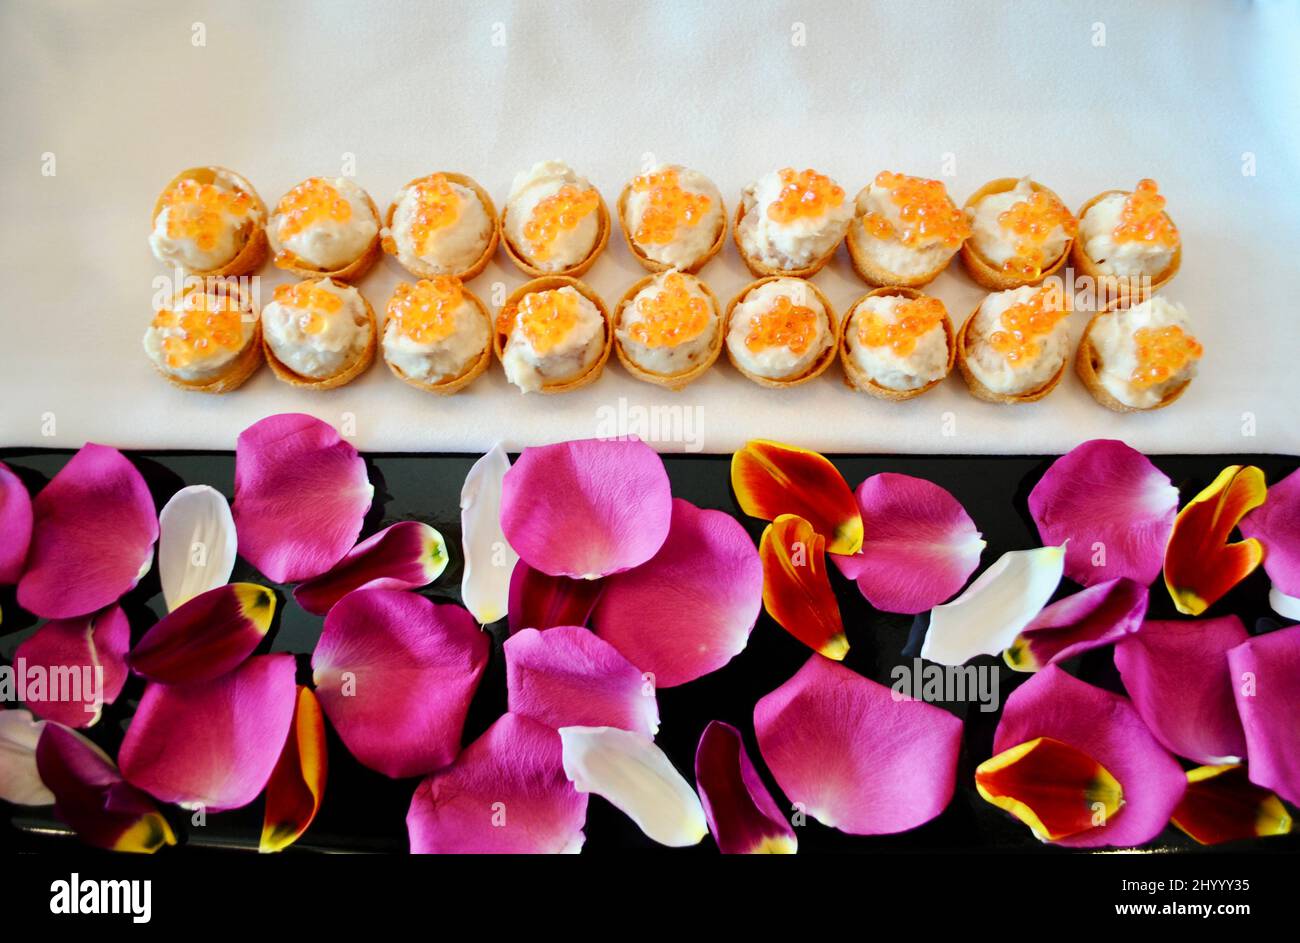 Geräucherter Weißfischsalat mit Lachskaviar als Cocktail-Hors d'Oeuvre auf einem Tablett, das mit rosa Rosenblättern und orangefarbenen Tulpenblättern verziert ist Stockfoto